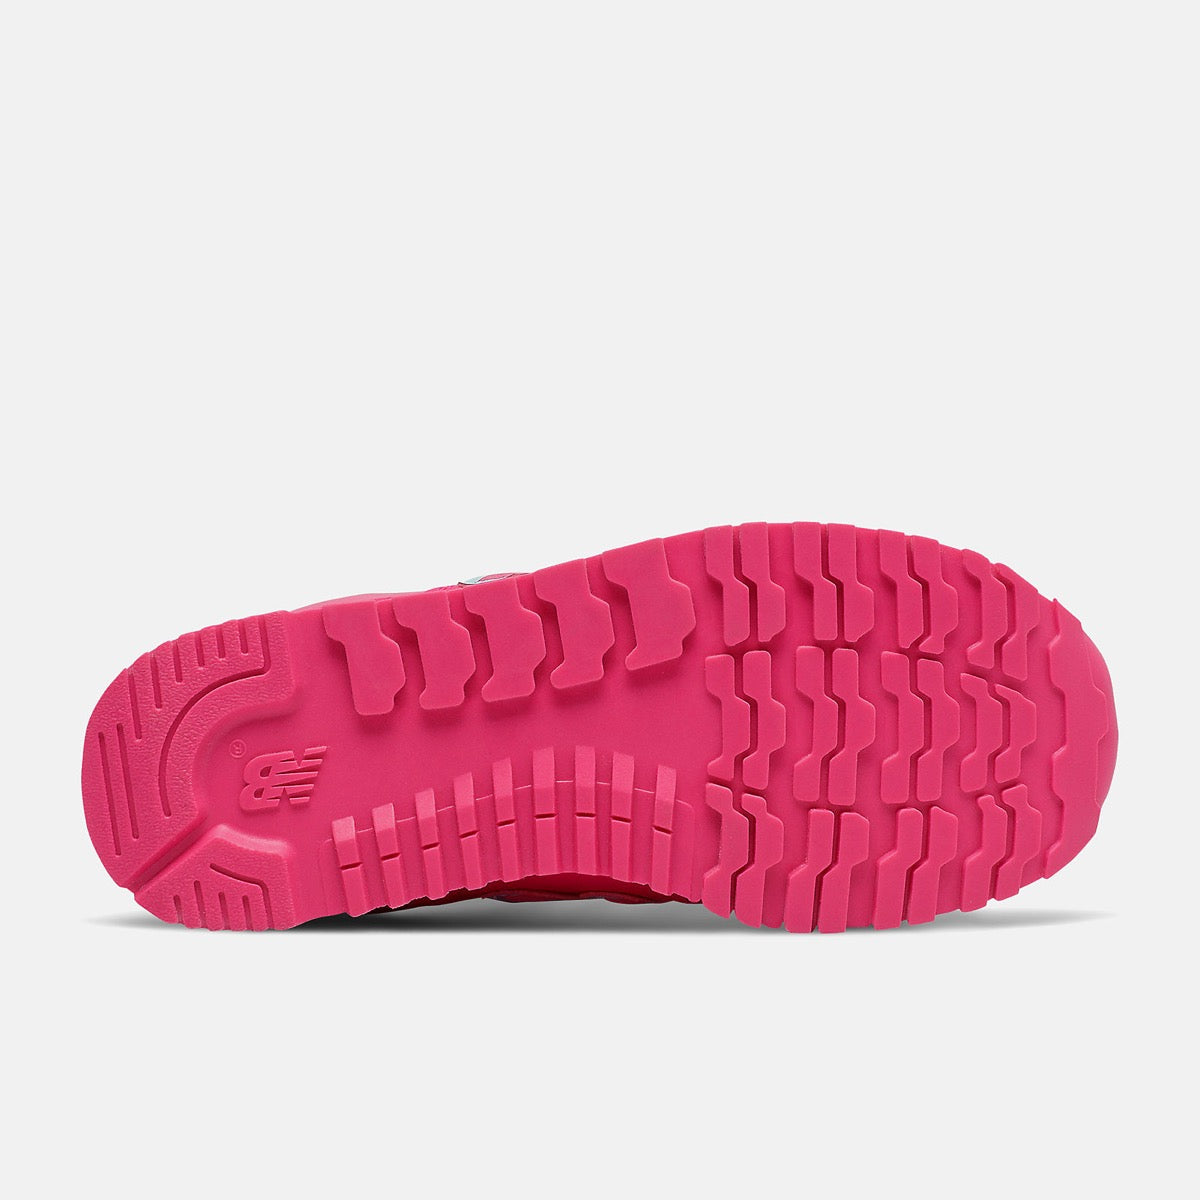 Scarpe Junior NEW BALANCE Sneakers 500 in Tessuto Sintetico colore Pink Glo e Blue Chill